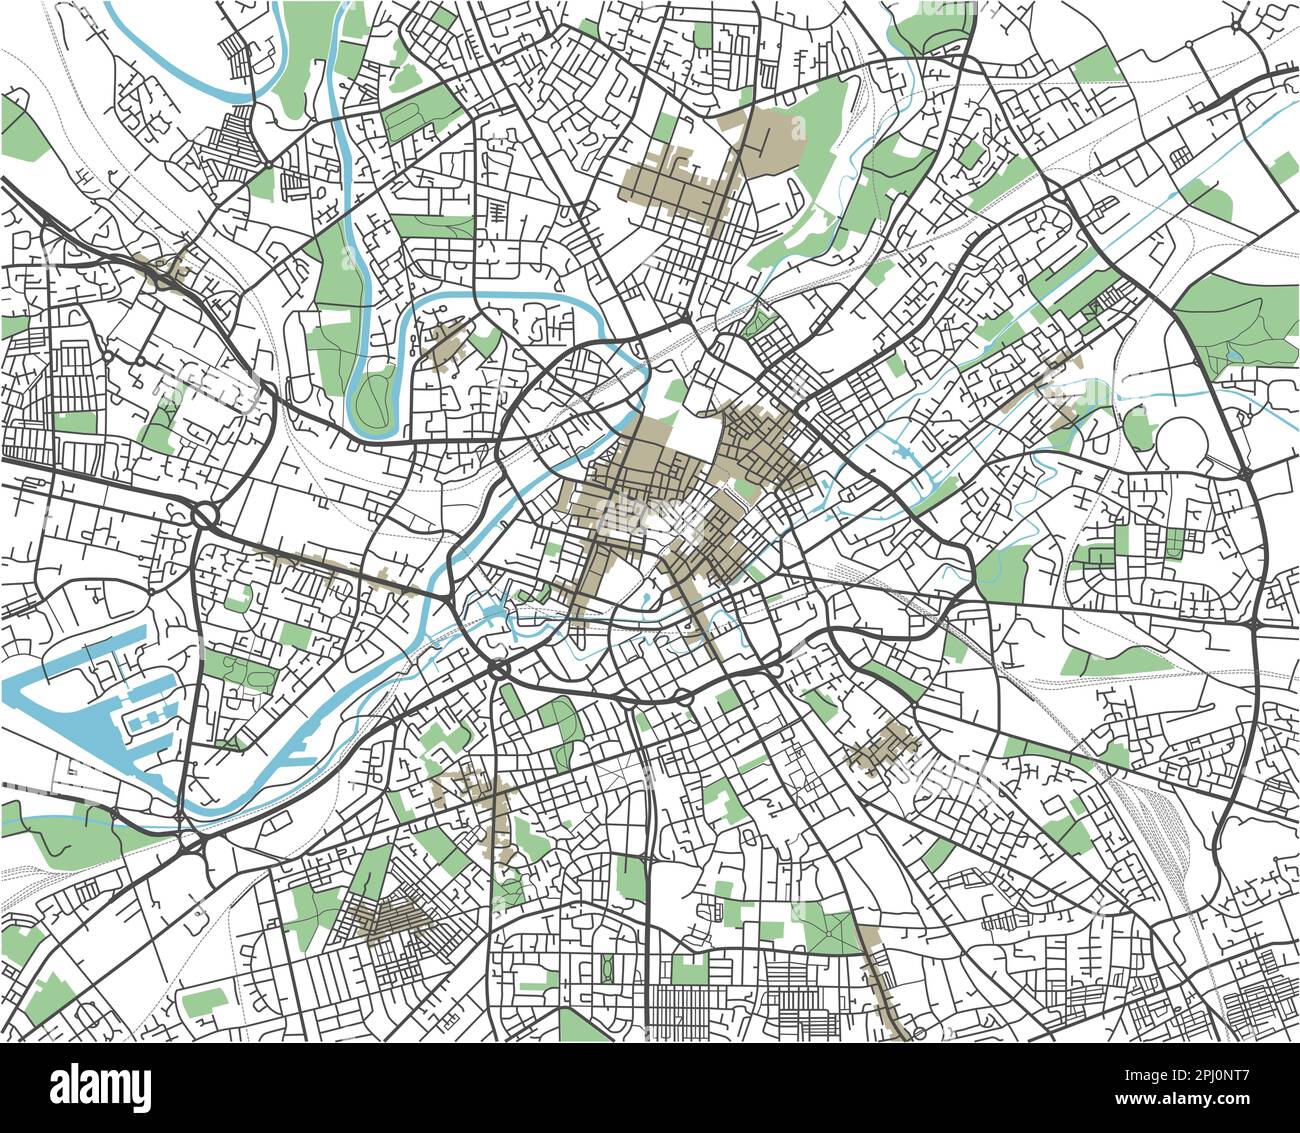 Farbenfroher Stadtplan von Manchester Stock Vektor